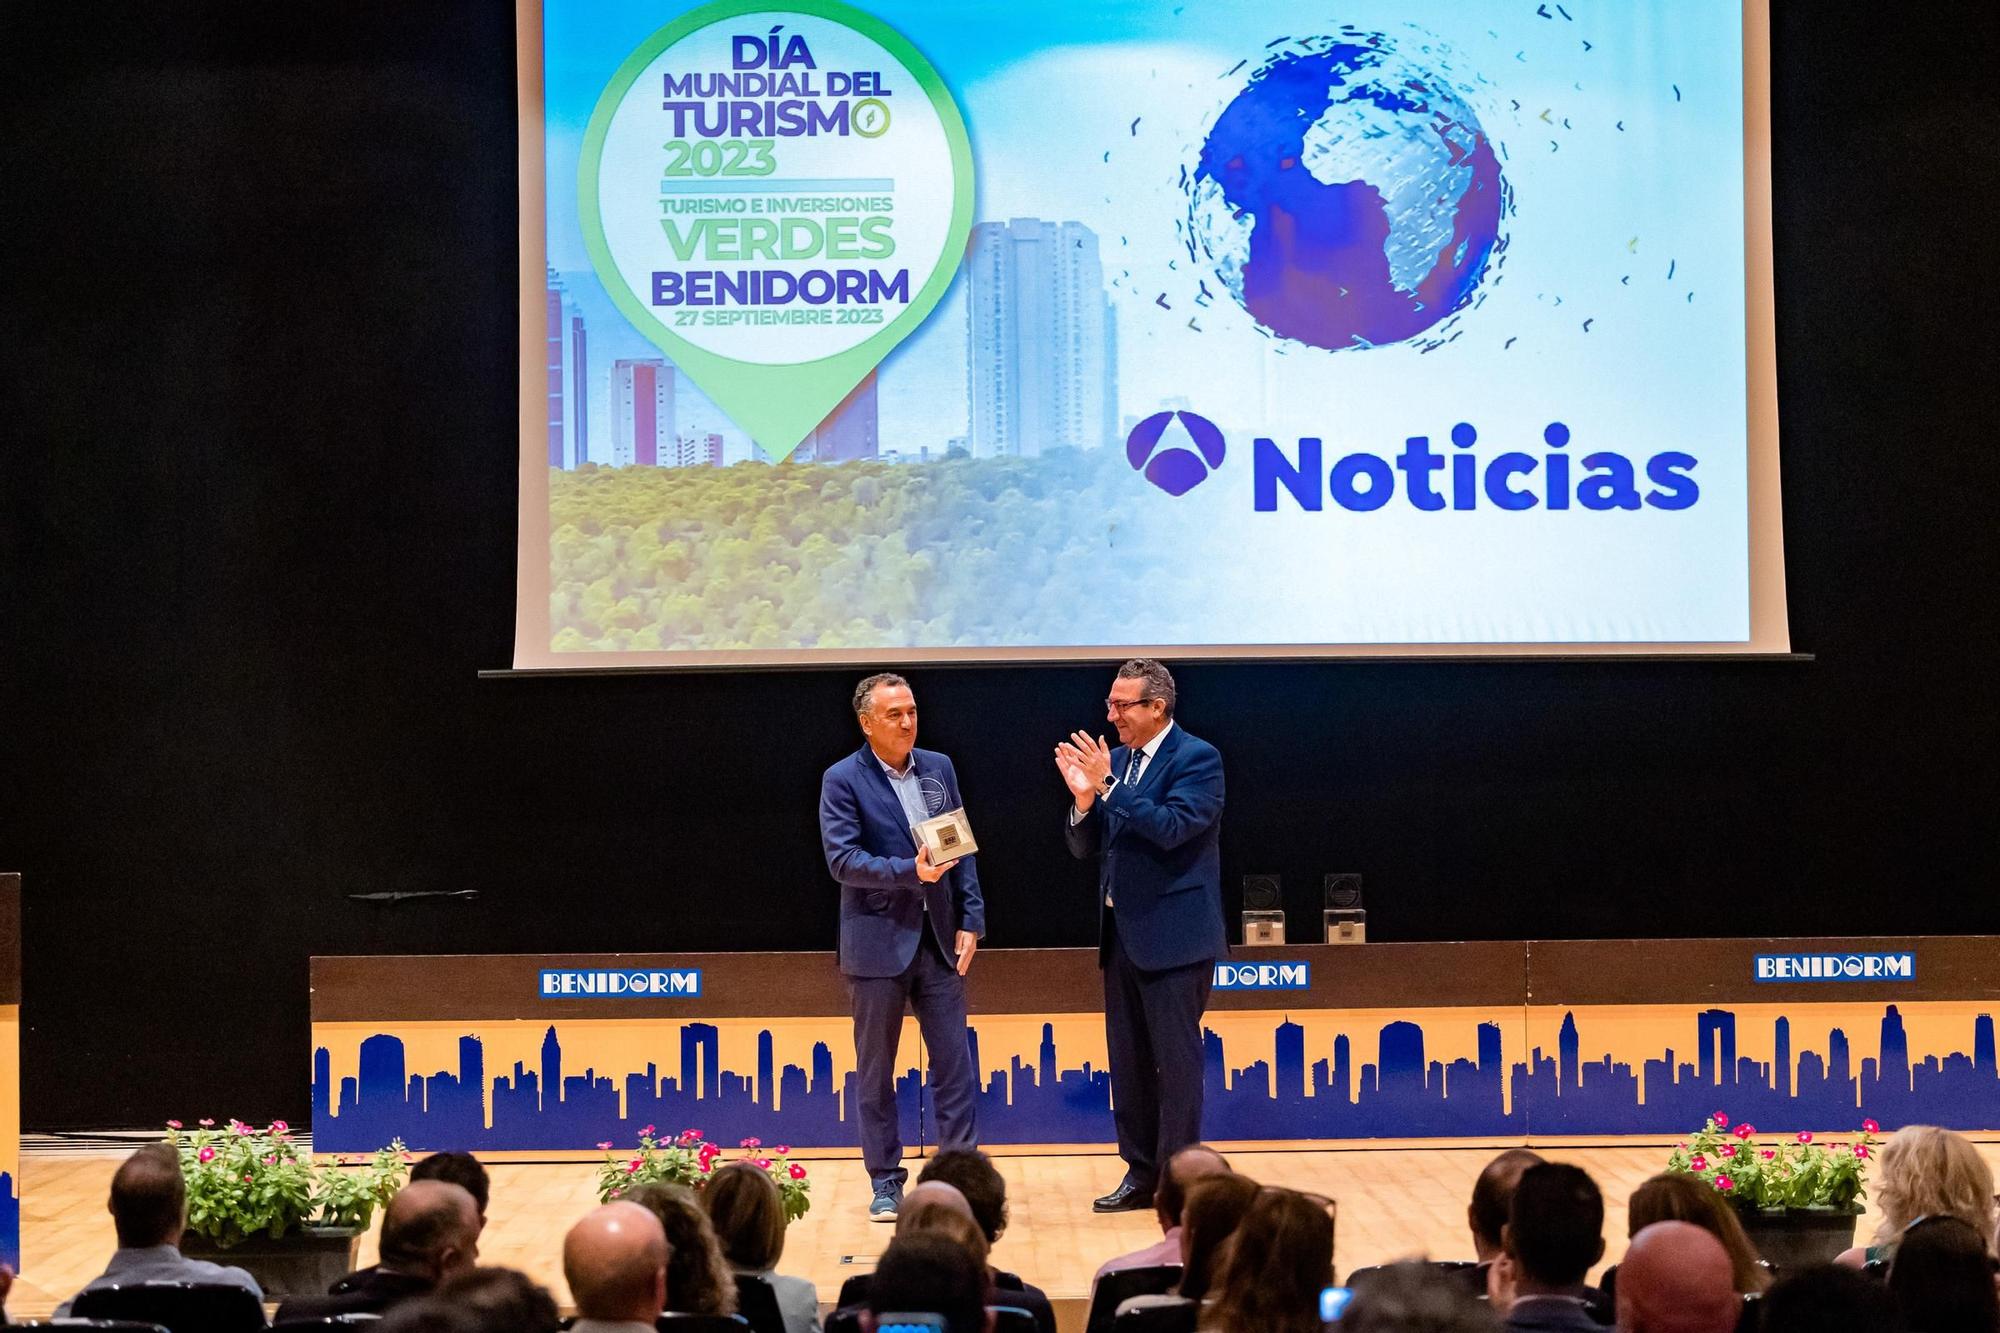 Benidorm reconoce en el Día Mundial del Turismo a Antena 3 Noticias y los periodistas F.J. Benito y Michelle Baker